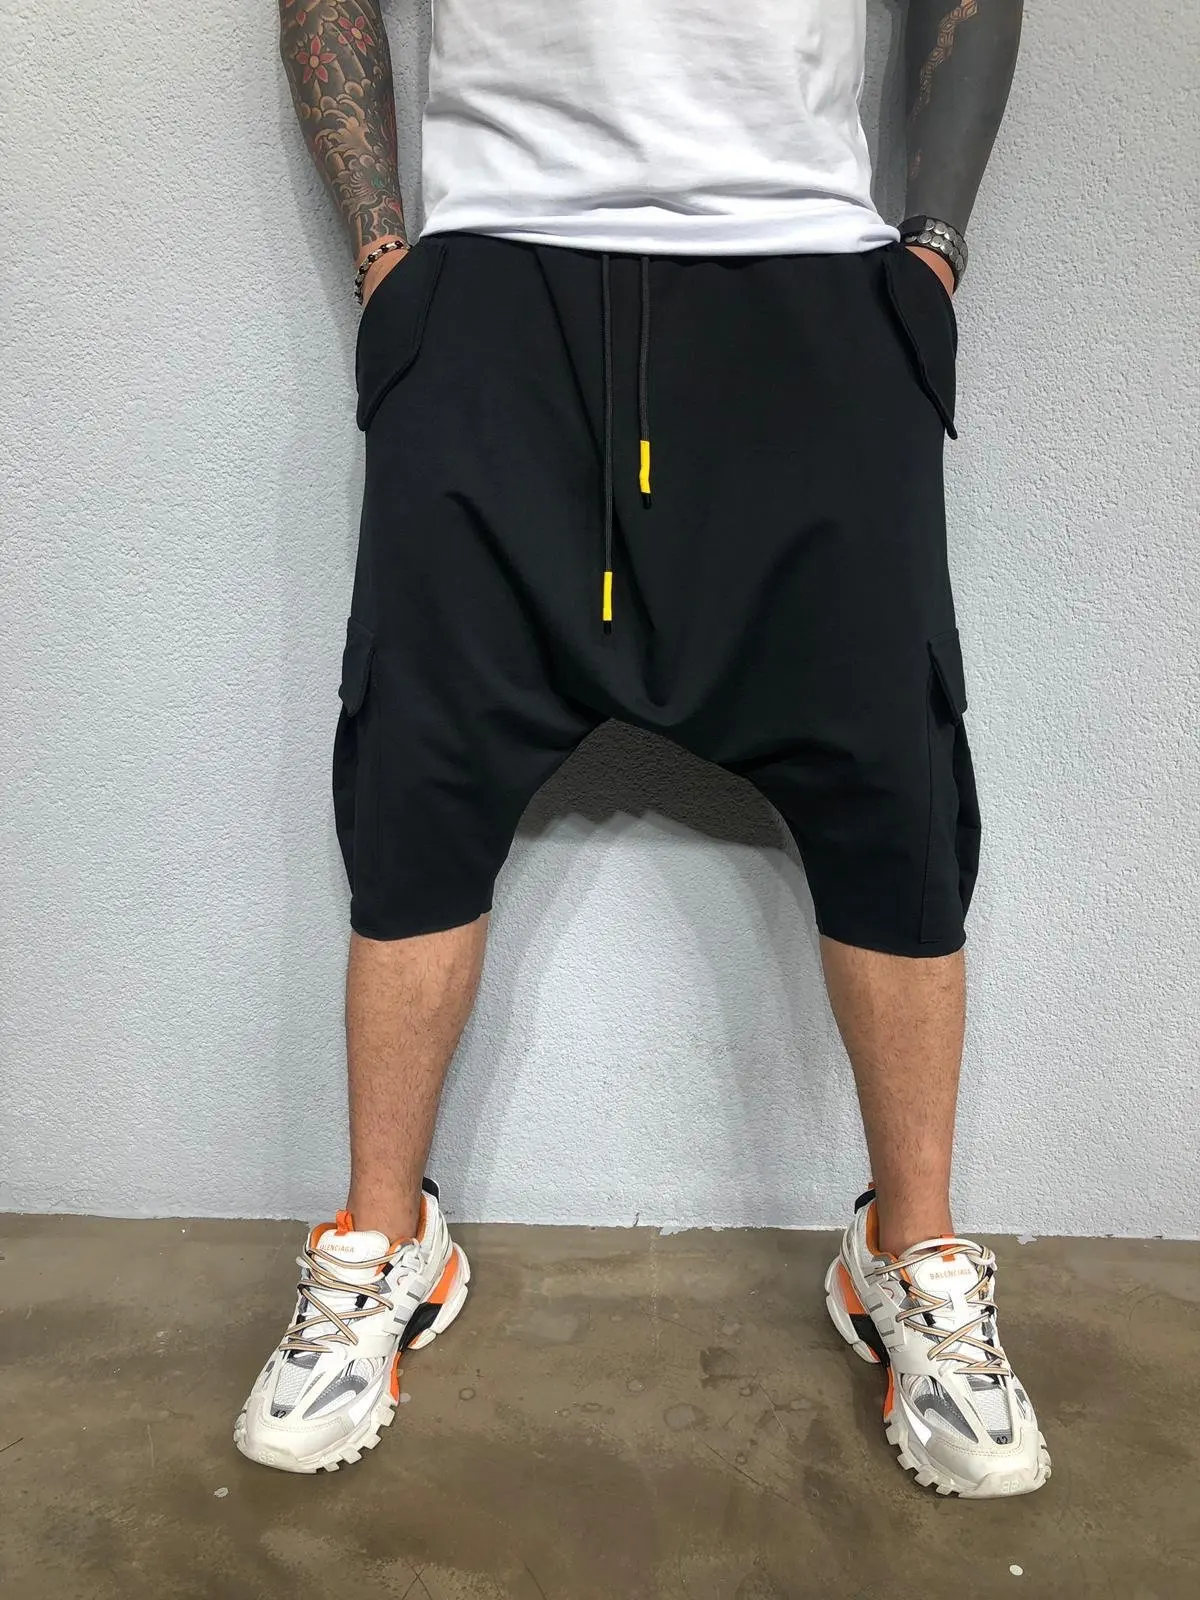 homens mtb shorts hip-hop tendência calças capri